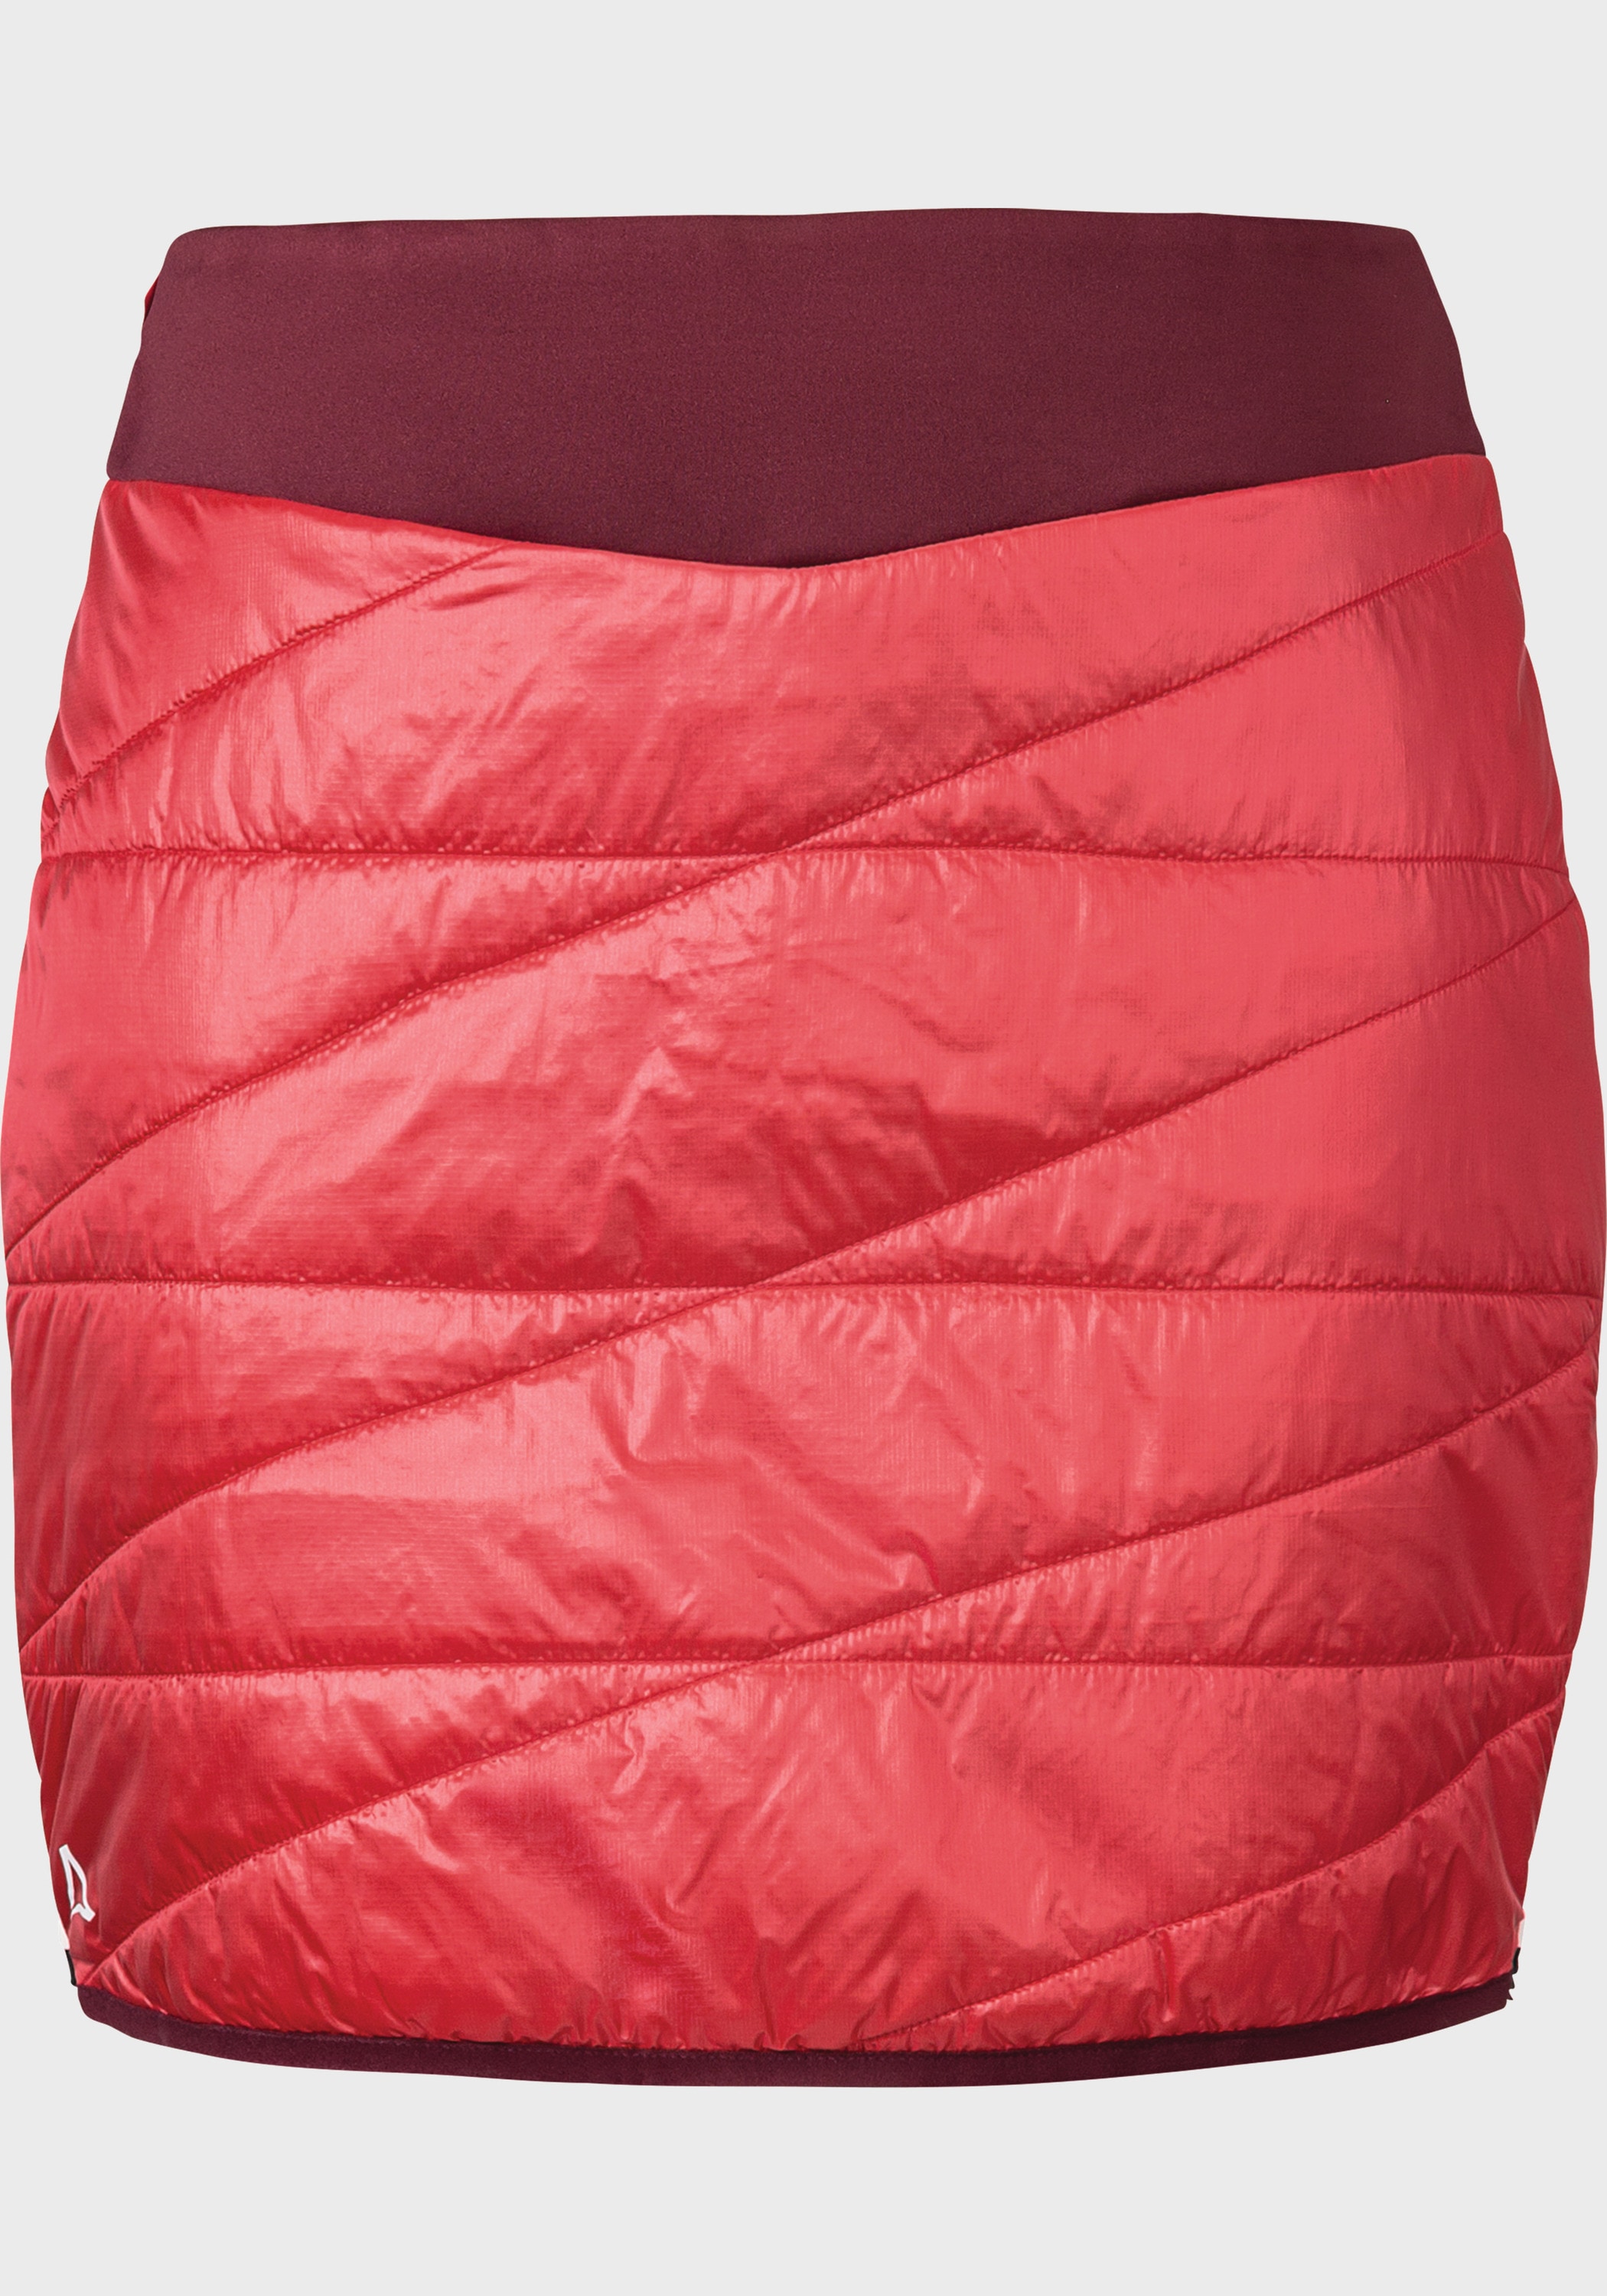 Schöffel L« Stams kaufen Skirt »Thermo bei Sweatrock OTTO